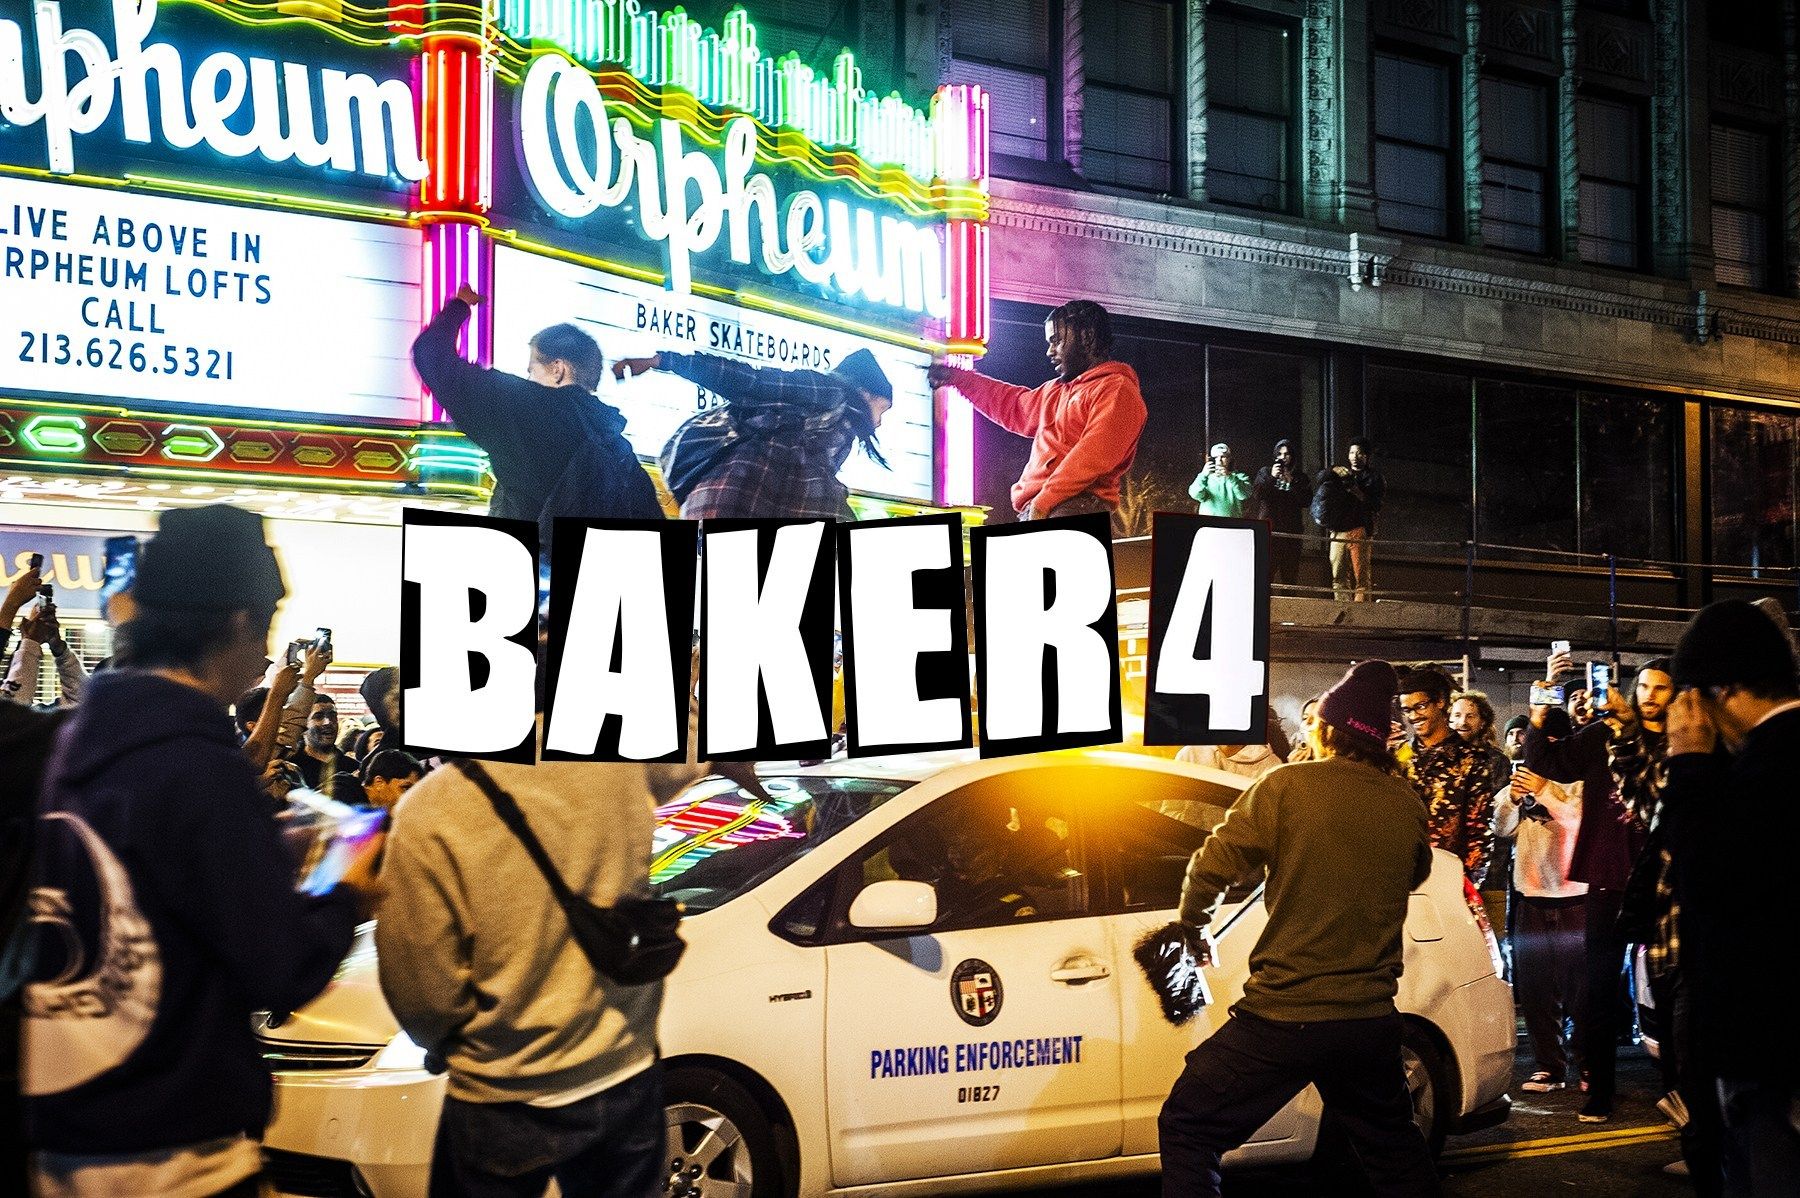 Baker 4 Premiere Photo Recap